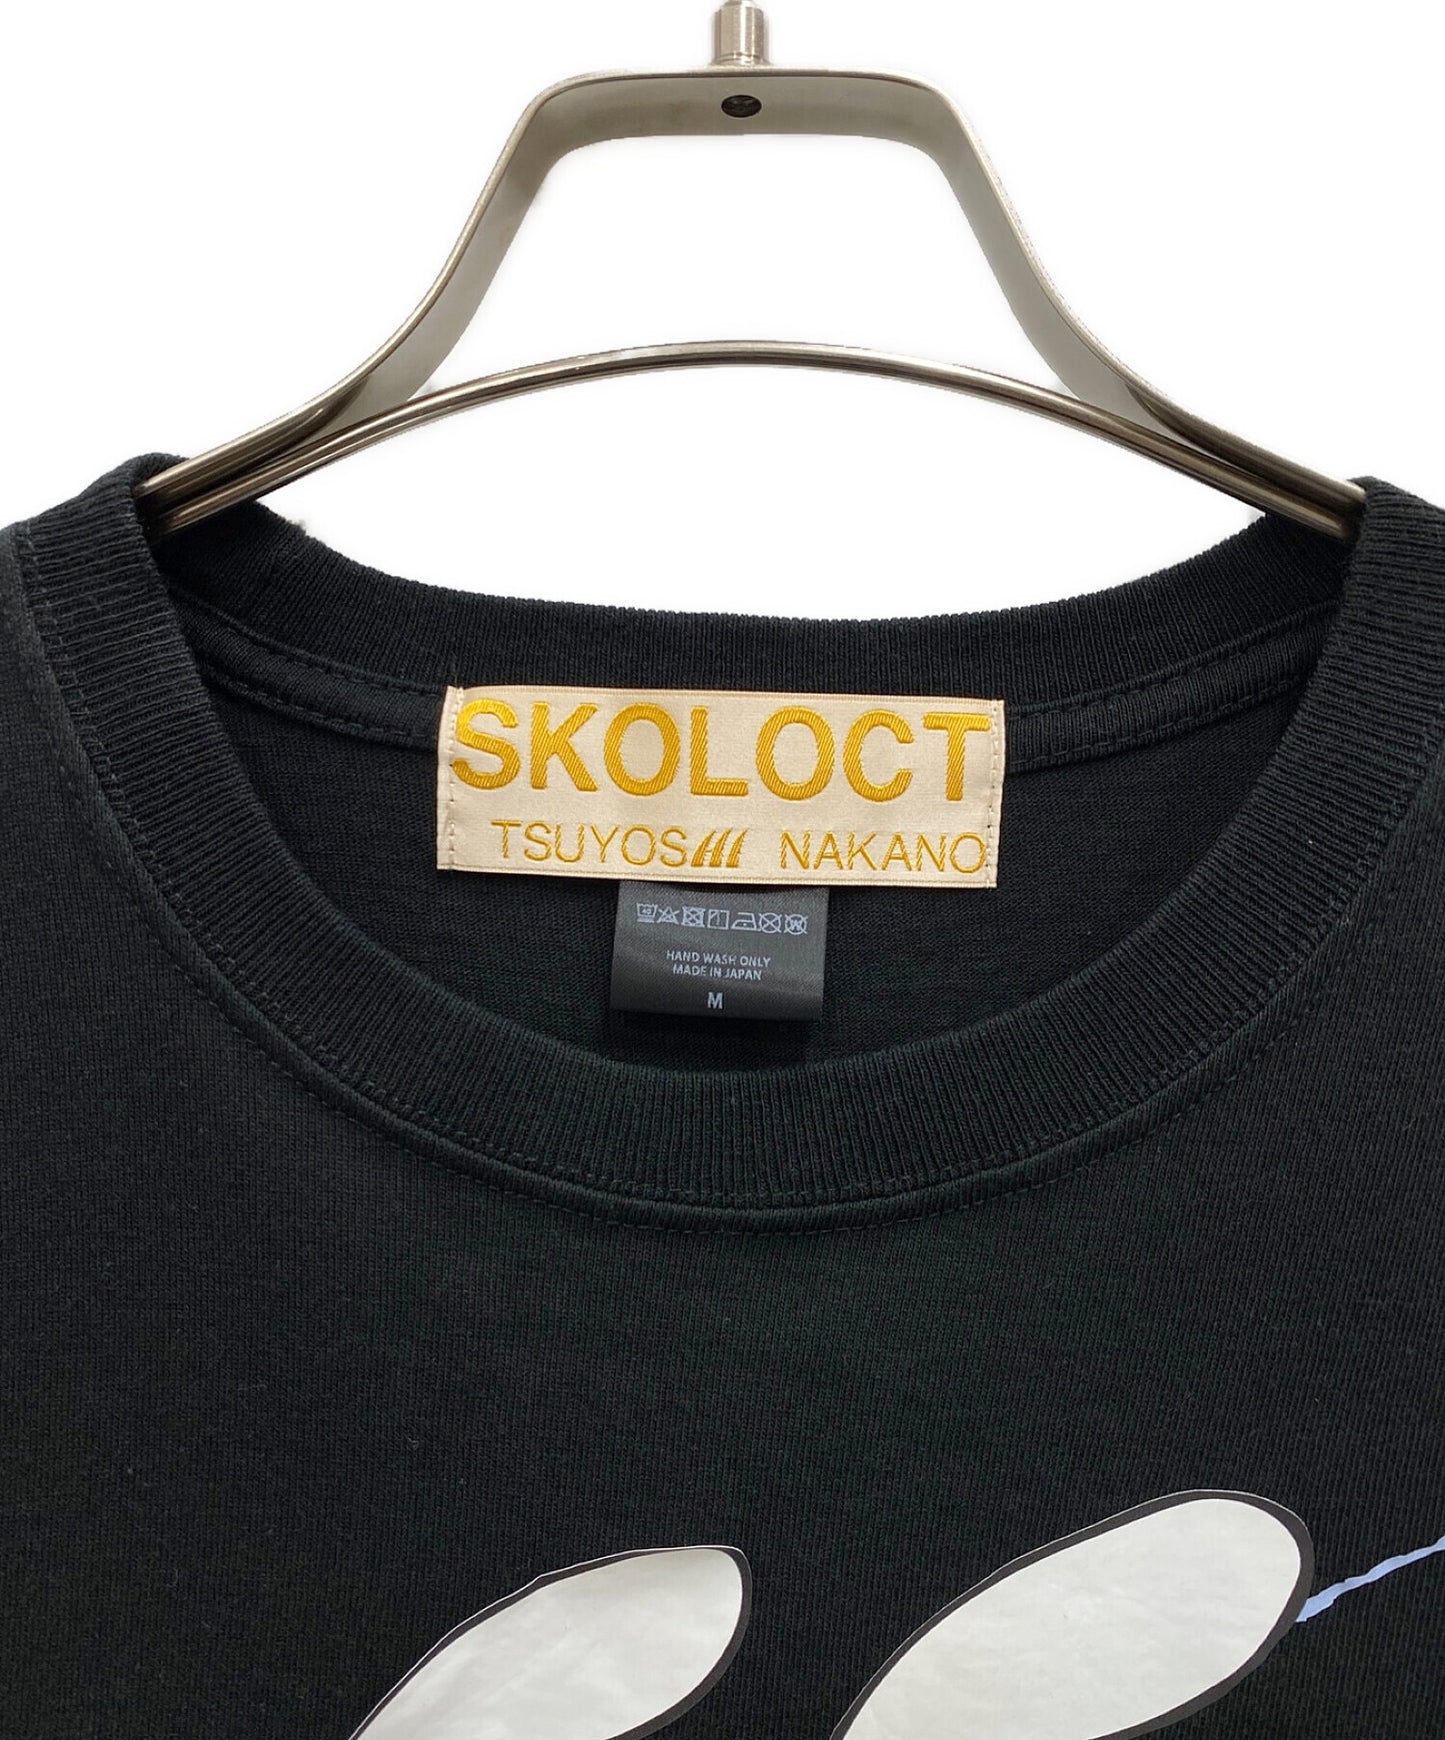 เสื้อยืดพิมพ์ Skoloct